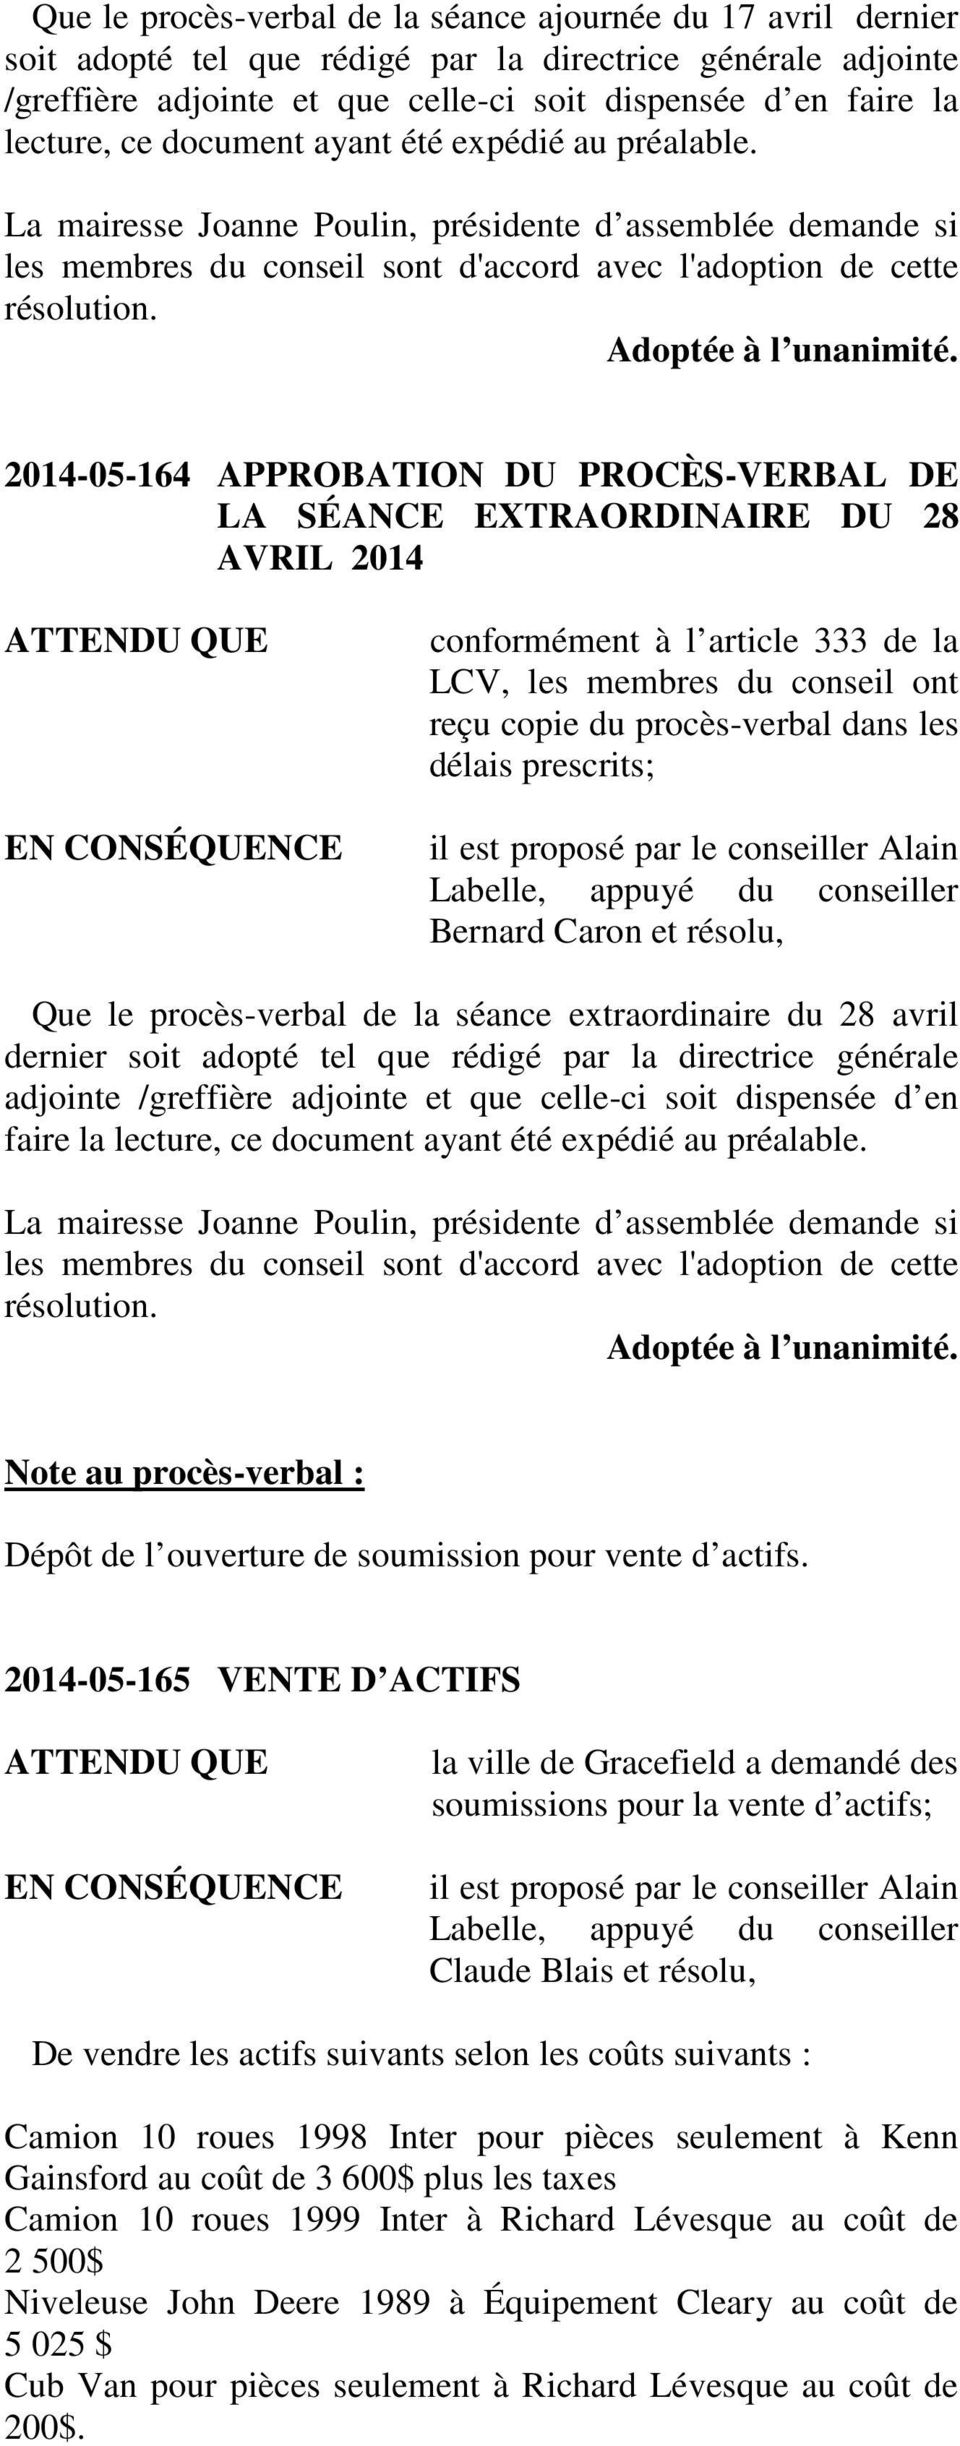 2014-05-164 APPROBATION DU PROCÈS-VERBAL DE LA SÉANCE EXTRAORDINAIRE DU 28 AVRIL 2014 conformément à l article 333 de la LCV, les membres du conseil ont reçu copie du procès-verbal dans les délais